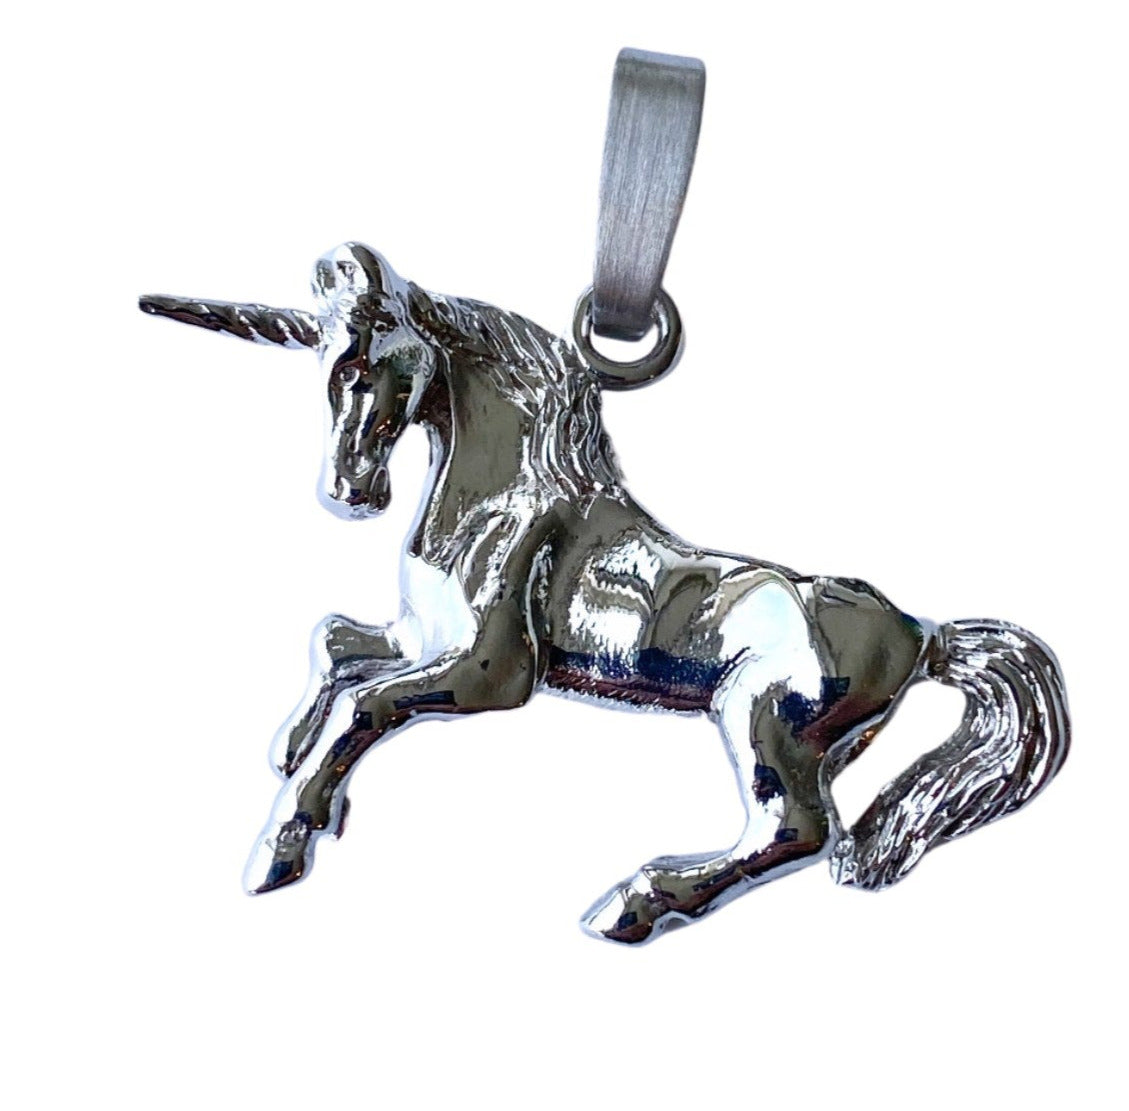 Unicorno - in drei Varianten erhältlich